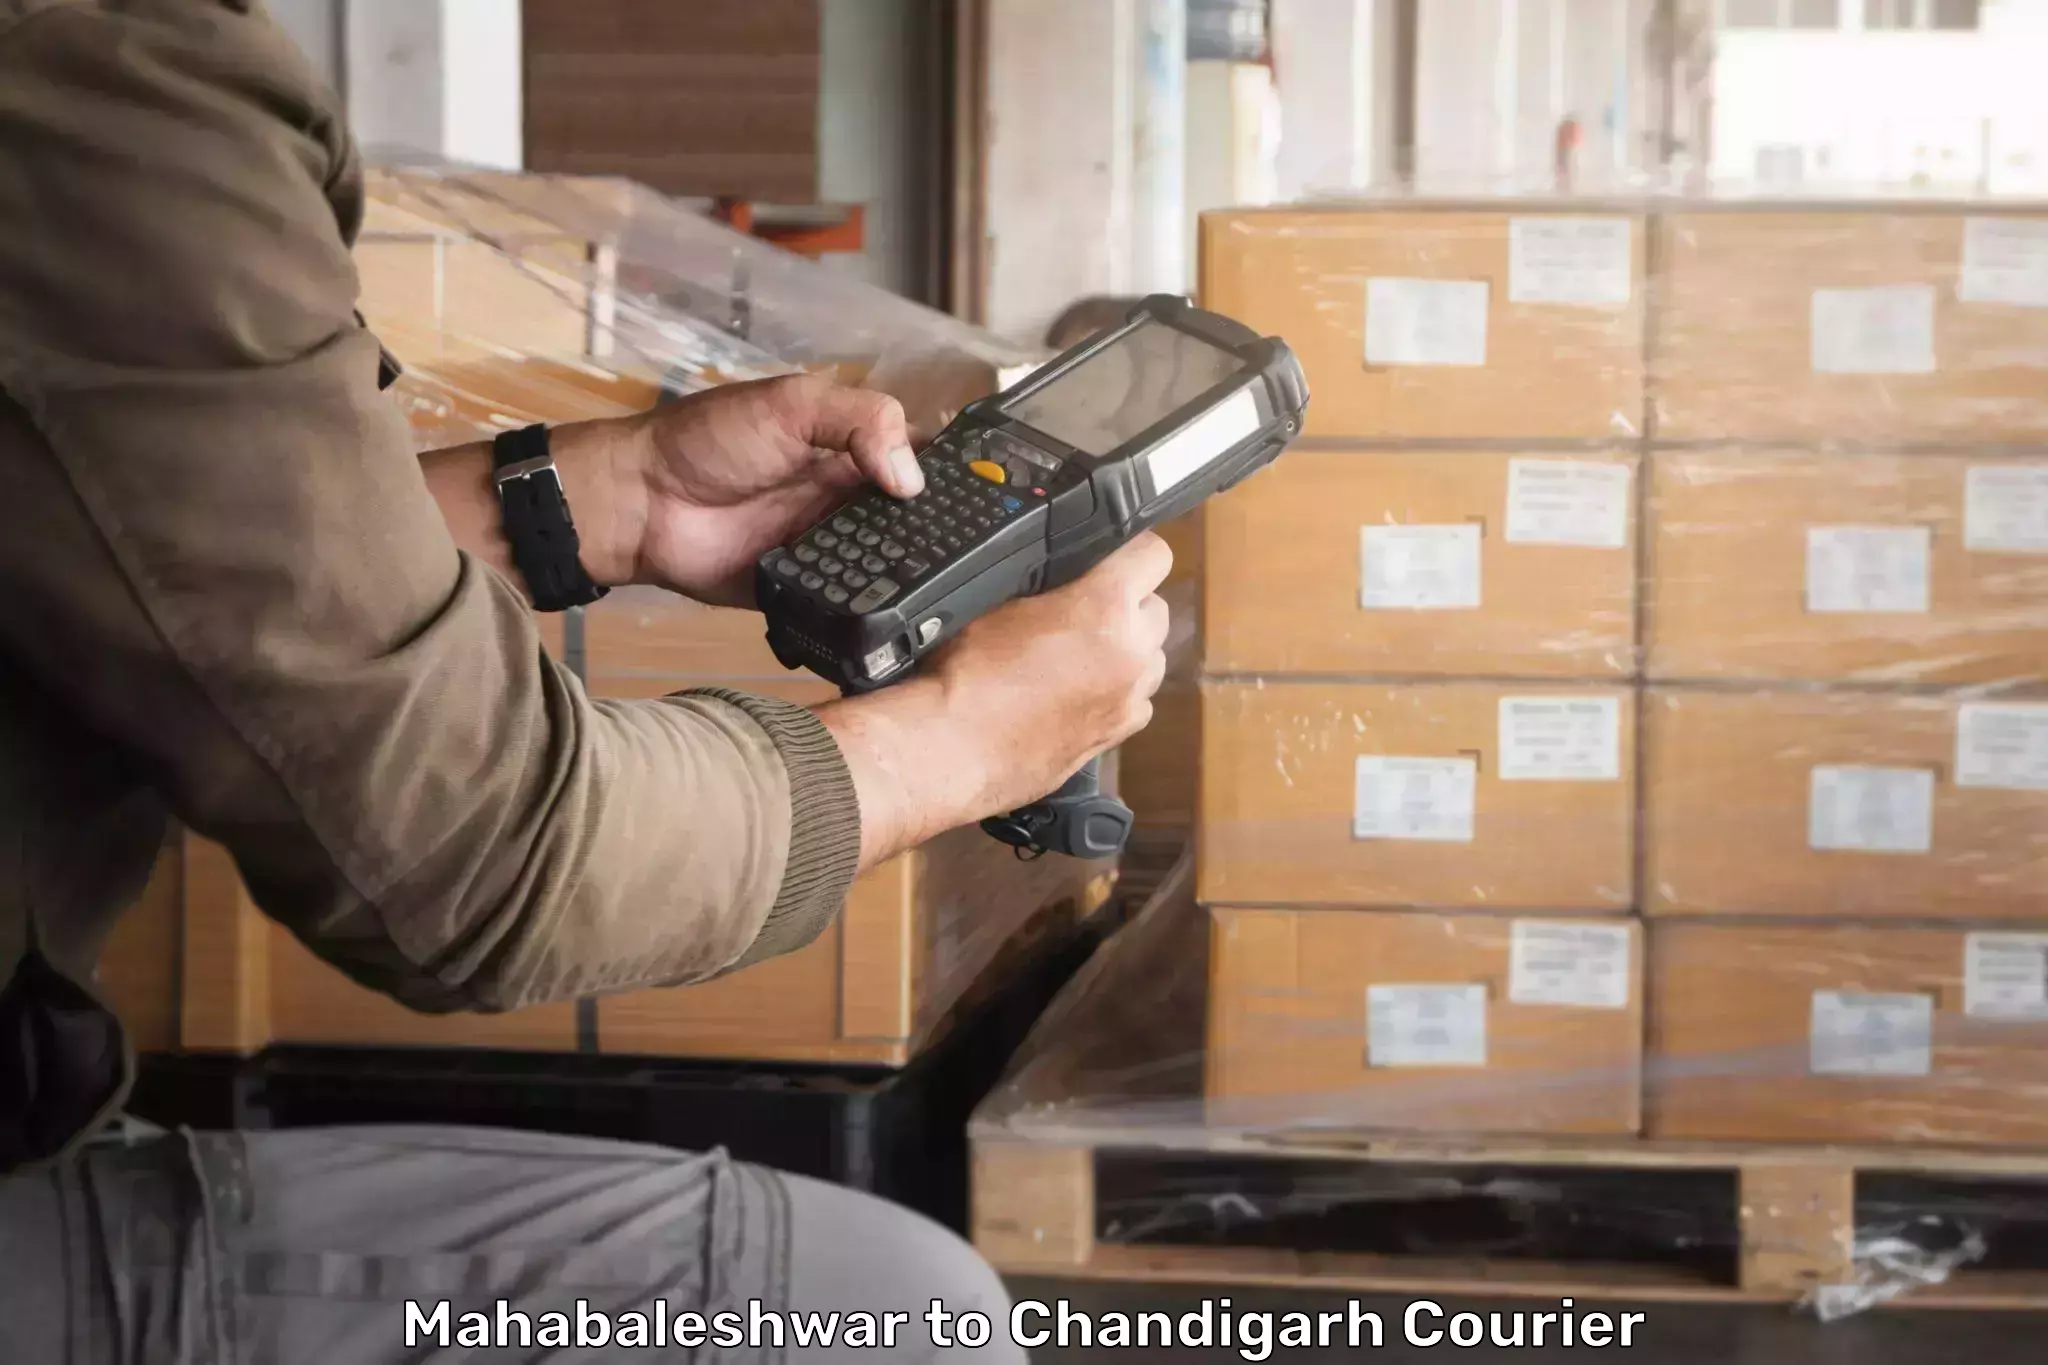 Multi-city courier Mahabaleshwar to Chandigarh